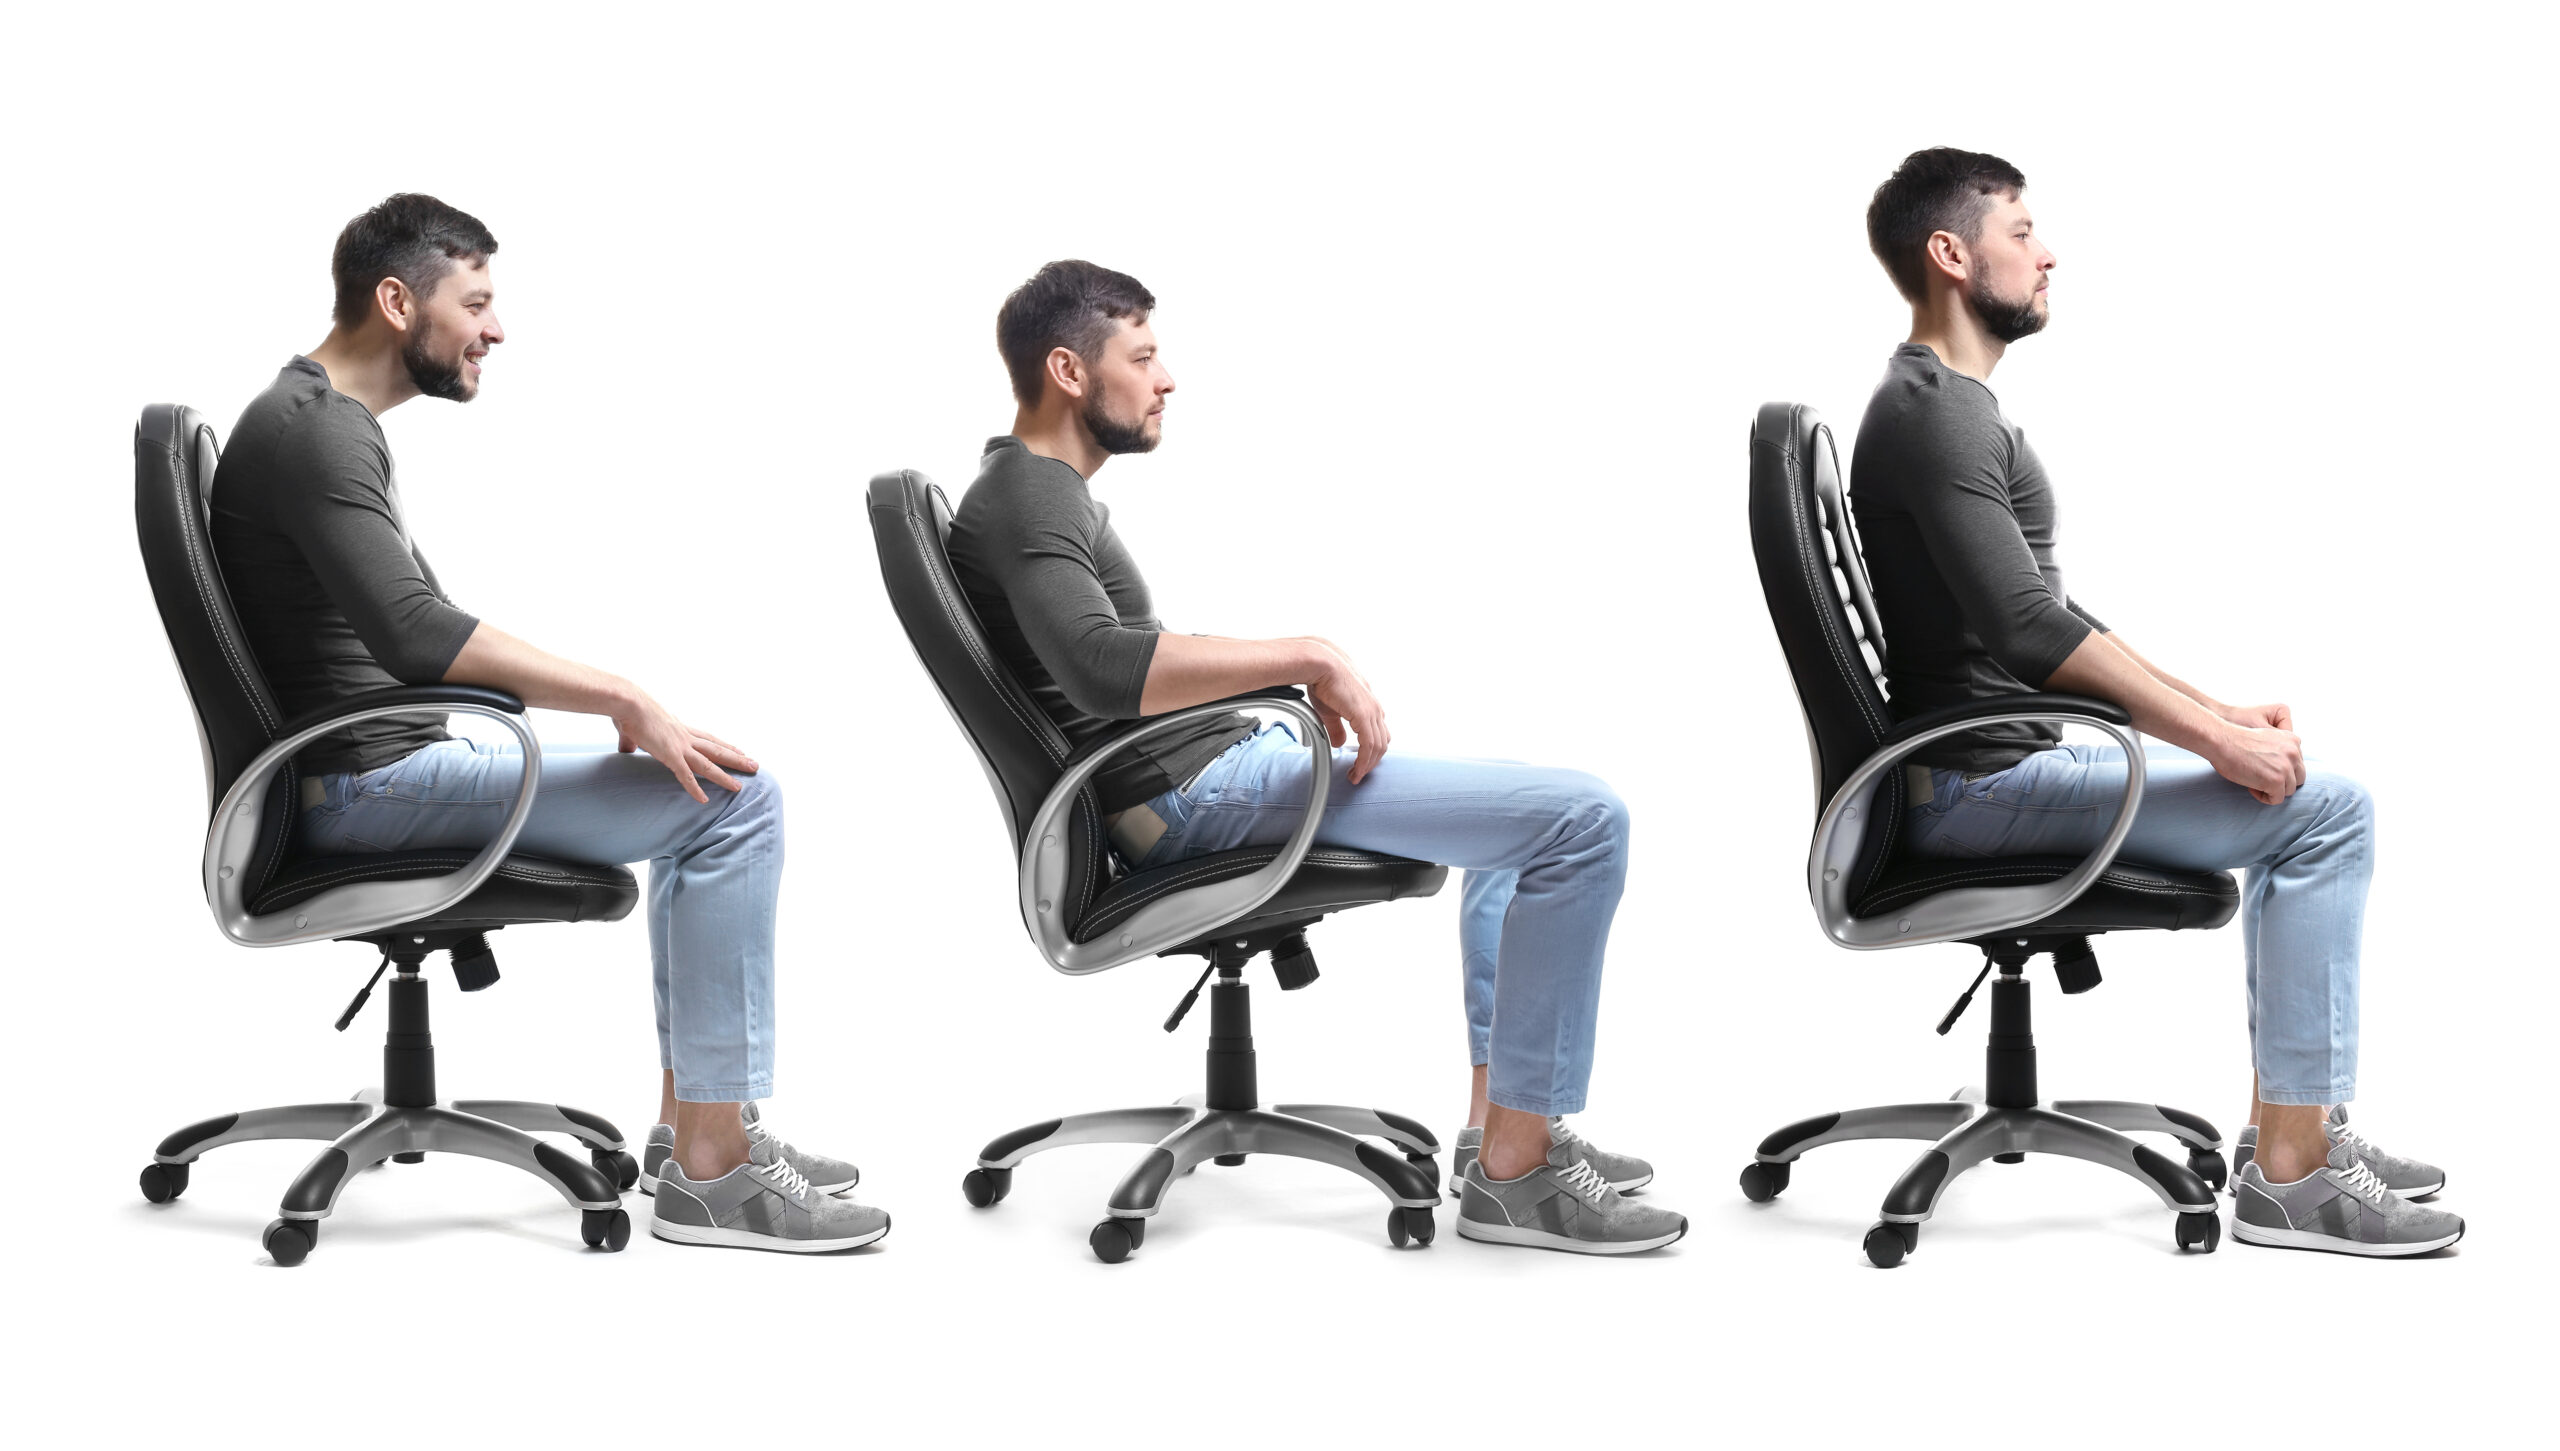 3 menn, sitter med hver sin holdning; krumbøyd, henslengt og rett i ryggen